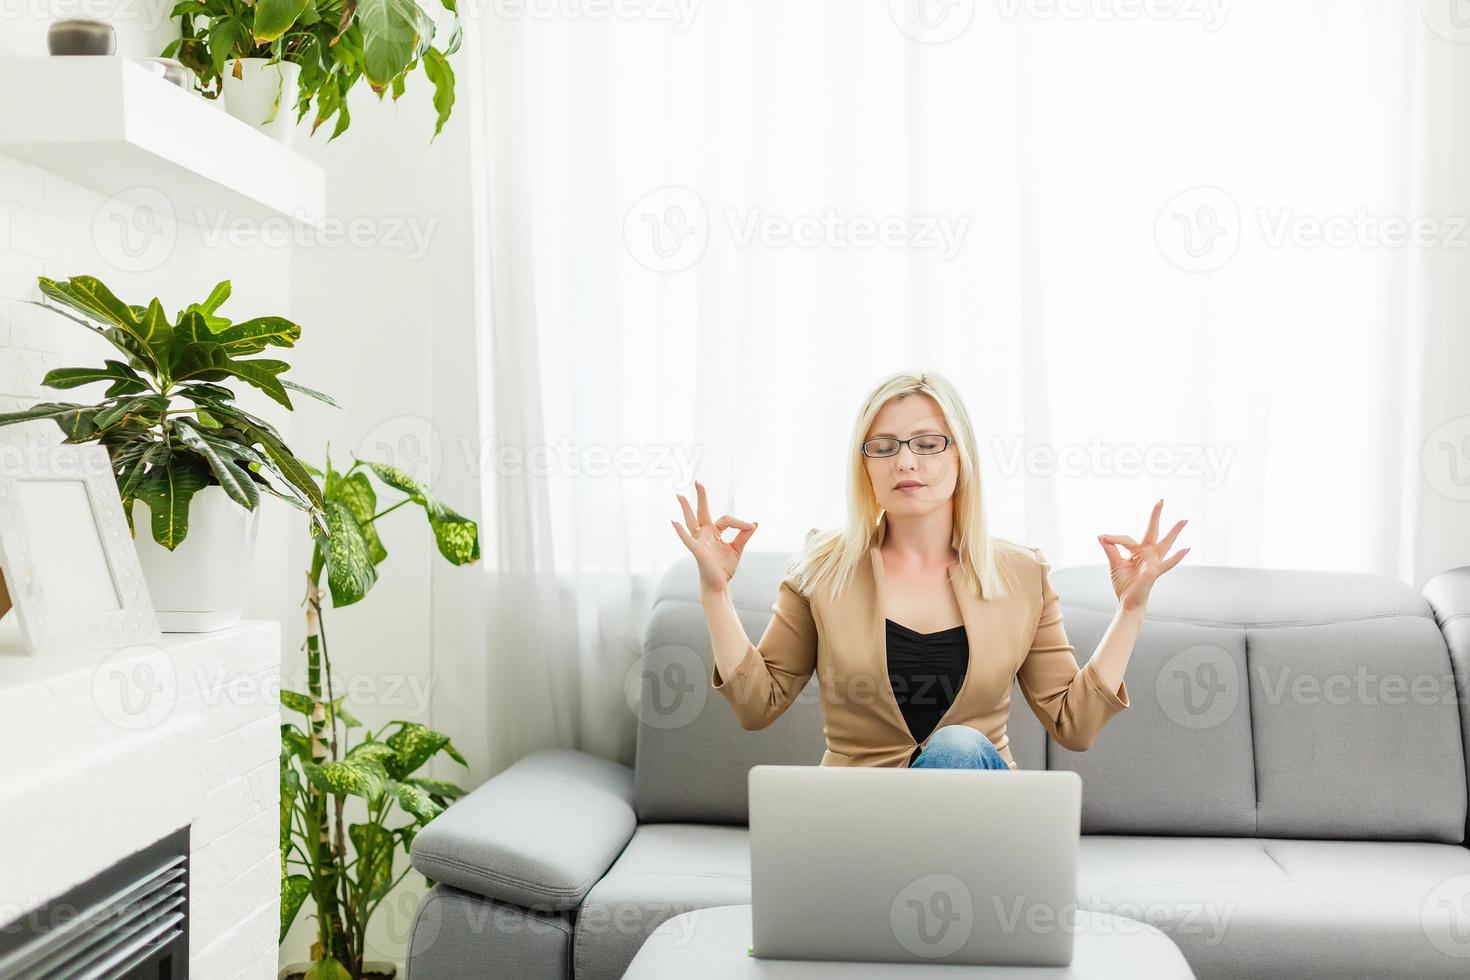 mujer joven meditando sentada frente a la computadora portátil, tomando una pausa, oficina ocupada y estresante, cura para la sobrecarga de trabajo, meditación de un momento, adorando la computadora portátil foto